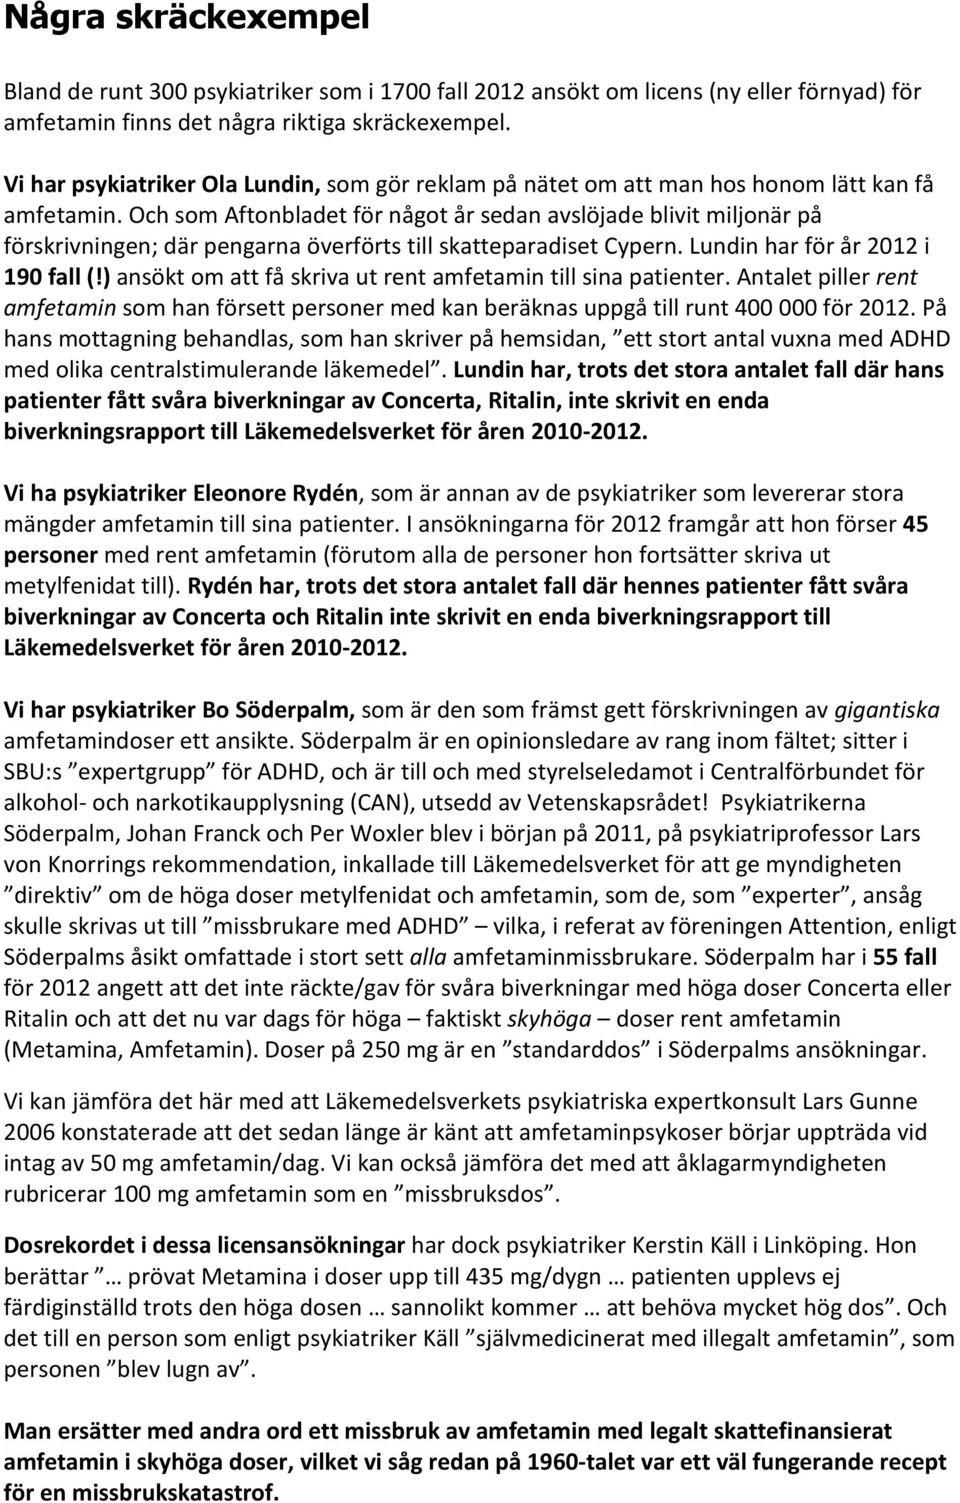 Och som Aftonbladet för något år sedan avslöjade blivit miljonär på förskrivningen; där pengarna överförts till skatteparadiset Cypern. Lundin har för år 2012 i 190 fall (!